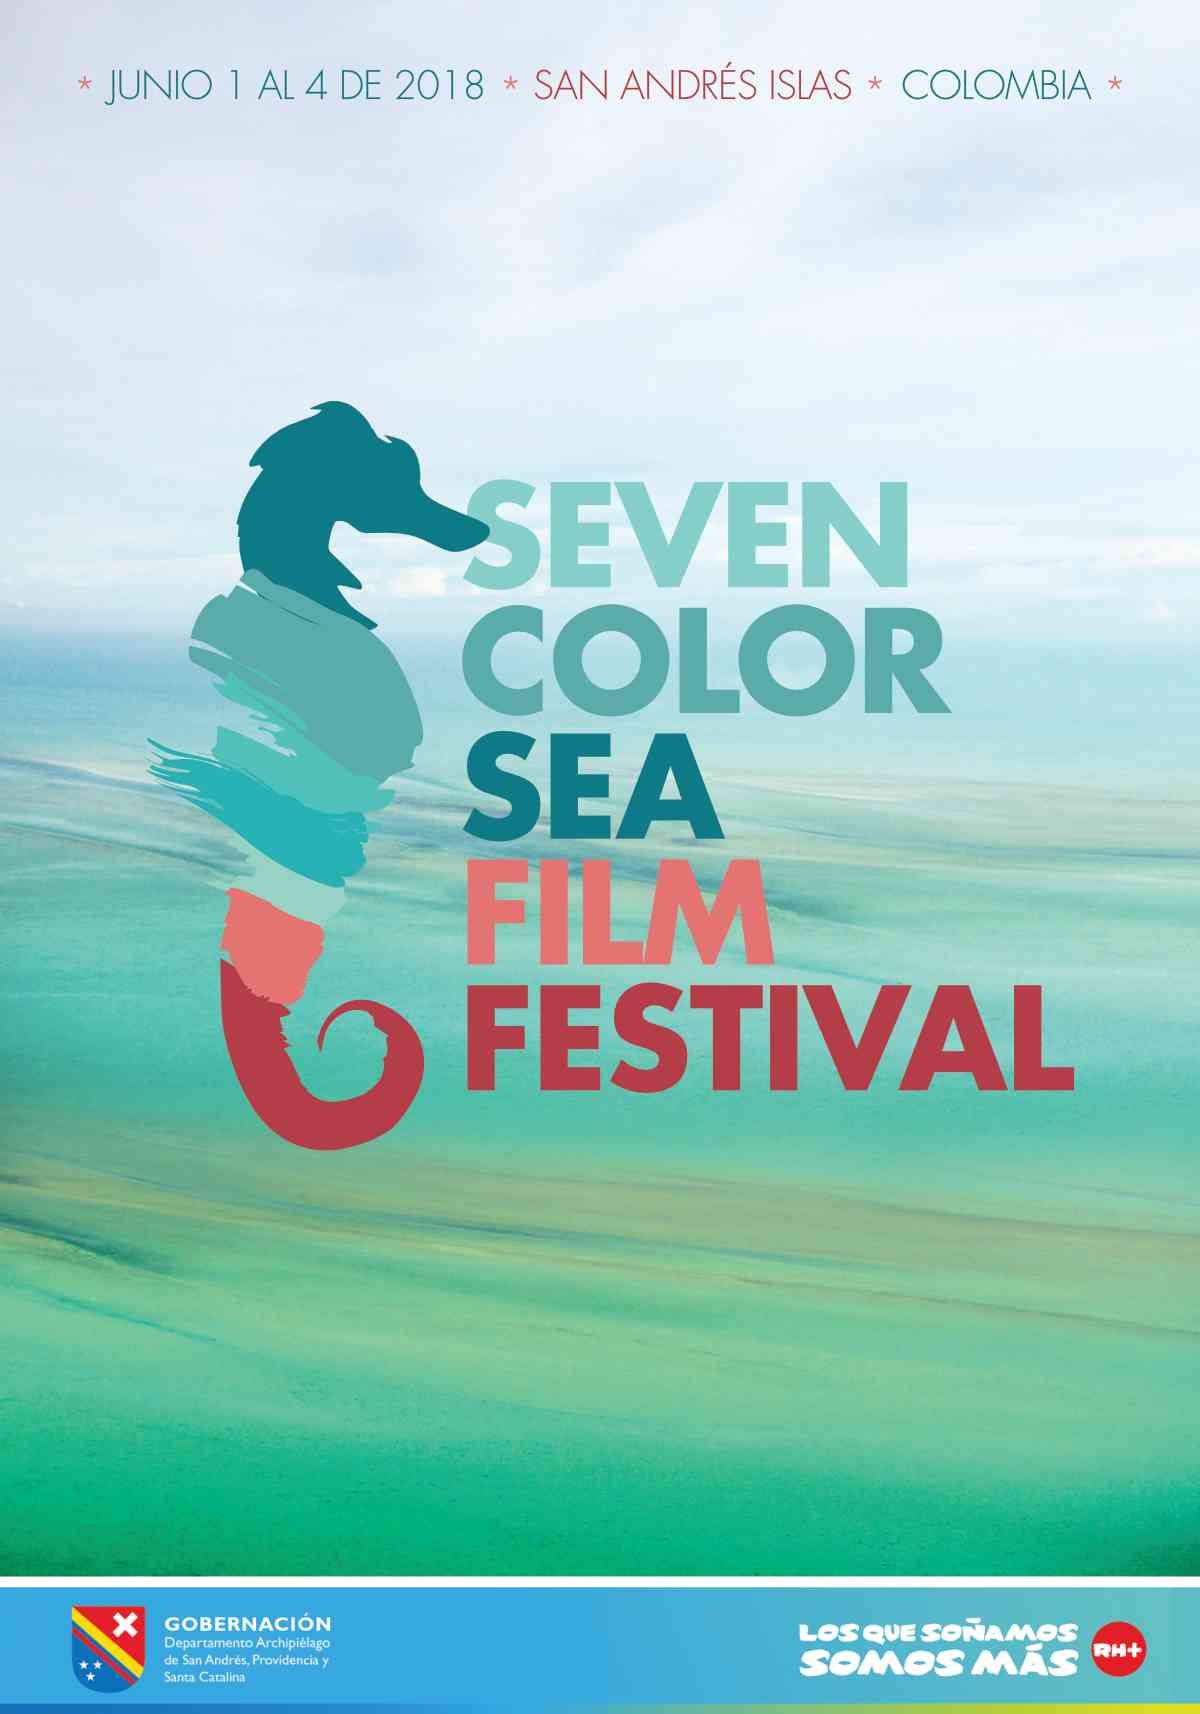 Festival de Cine del Mar de los Siete Colores